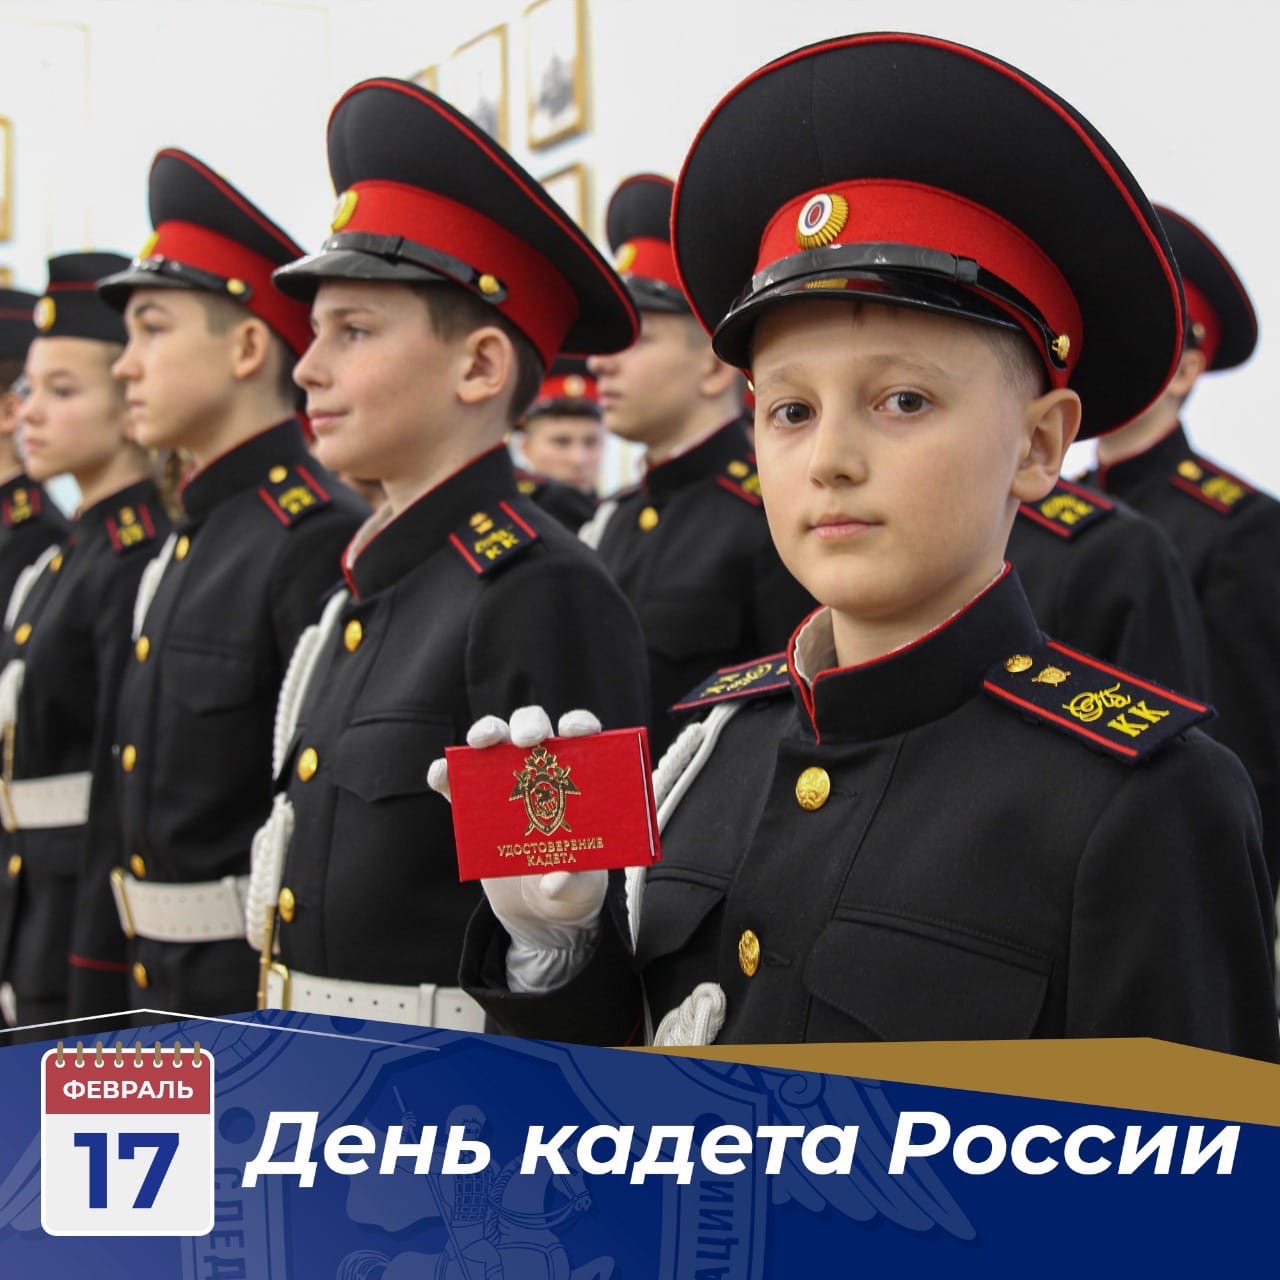 17 февраля в нашей стране отмечается День российского кадета.